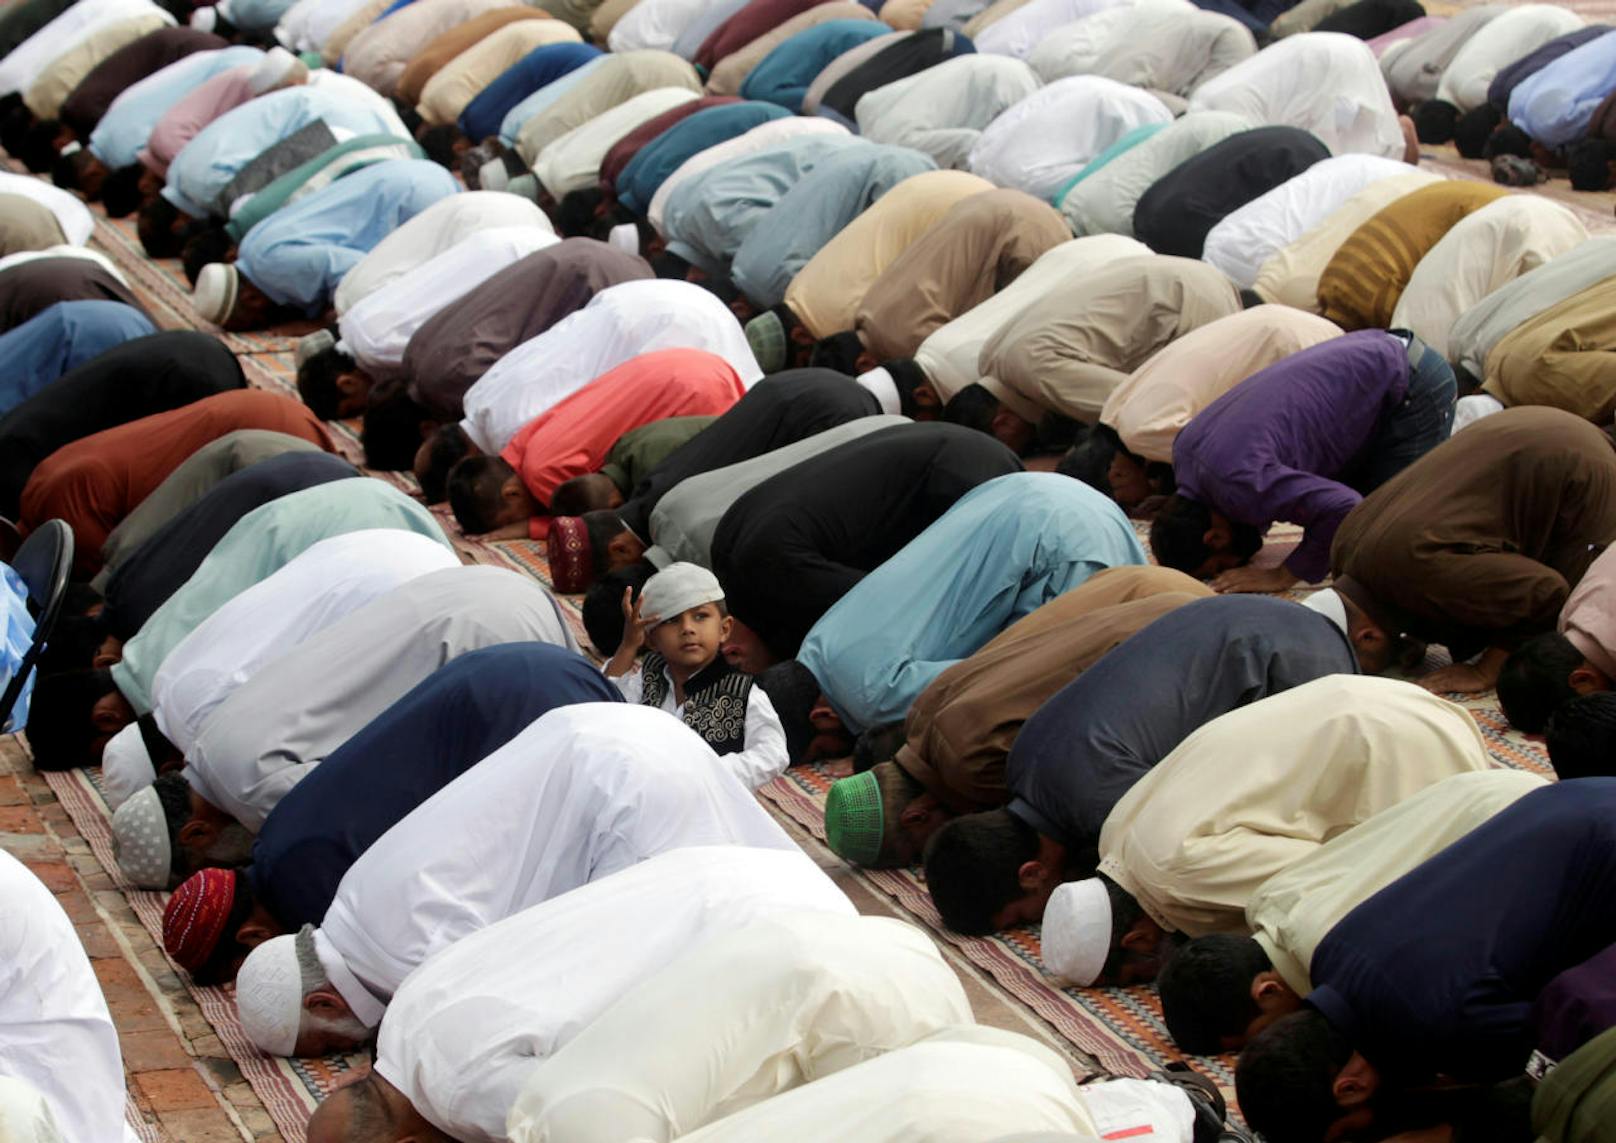 In Österreich sind laut einer Schätzung des Forschungsinstituts Pew Research Center derzeit 6,9 Prozent der Einwohner muslimischen Glaubens: Dieser Anteil könnte in den nächsten drei Jahrzehnten dramatisch ansteigen.